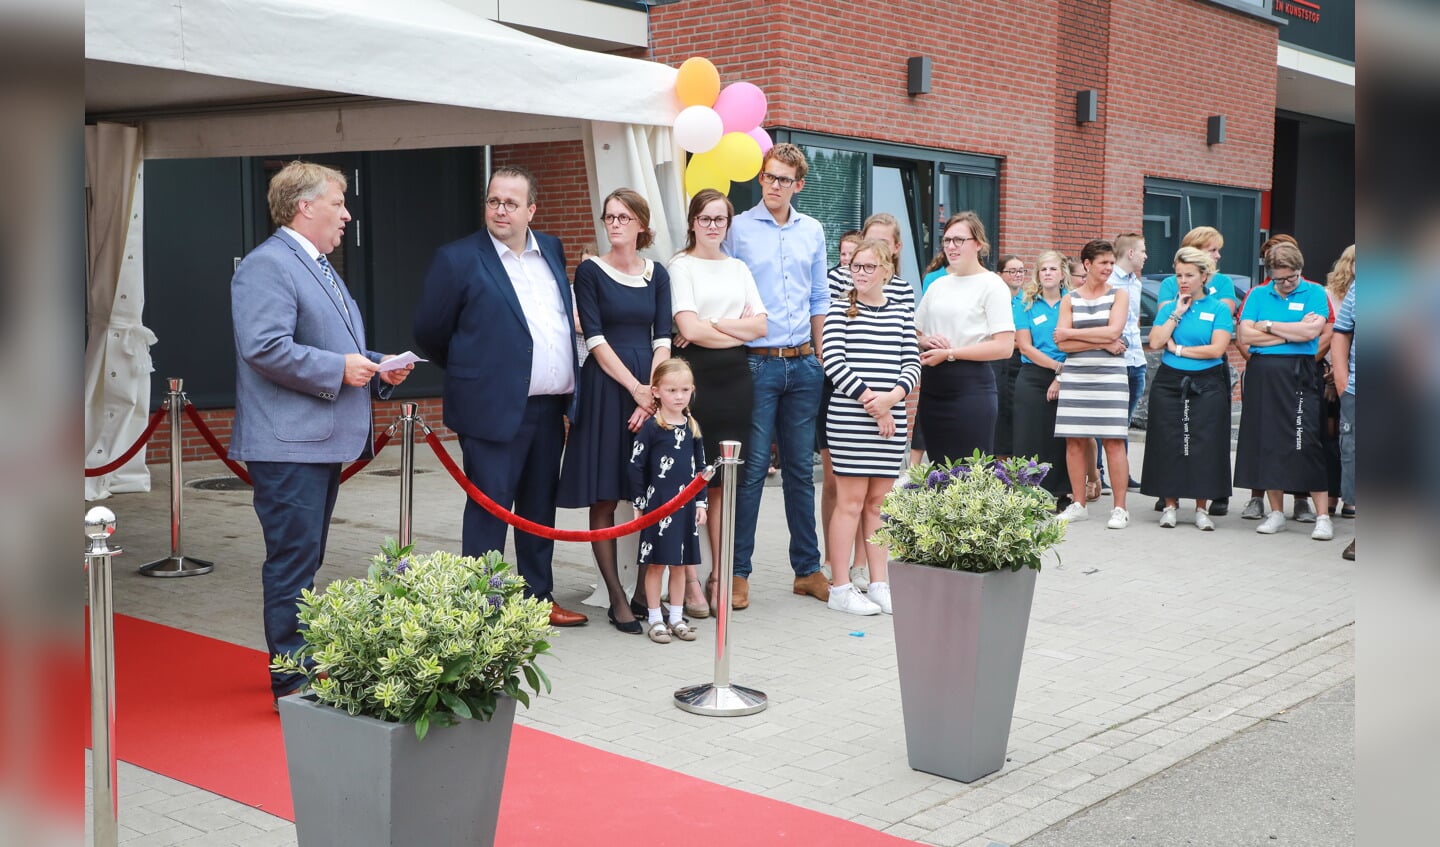 Opening Bakkerij Van Horssen